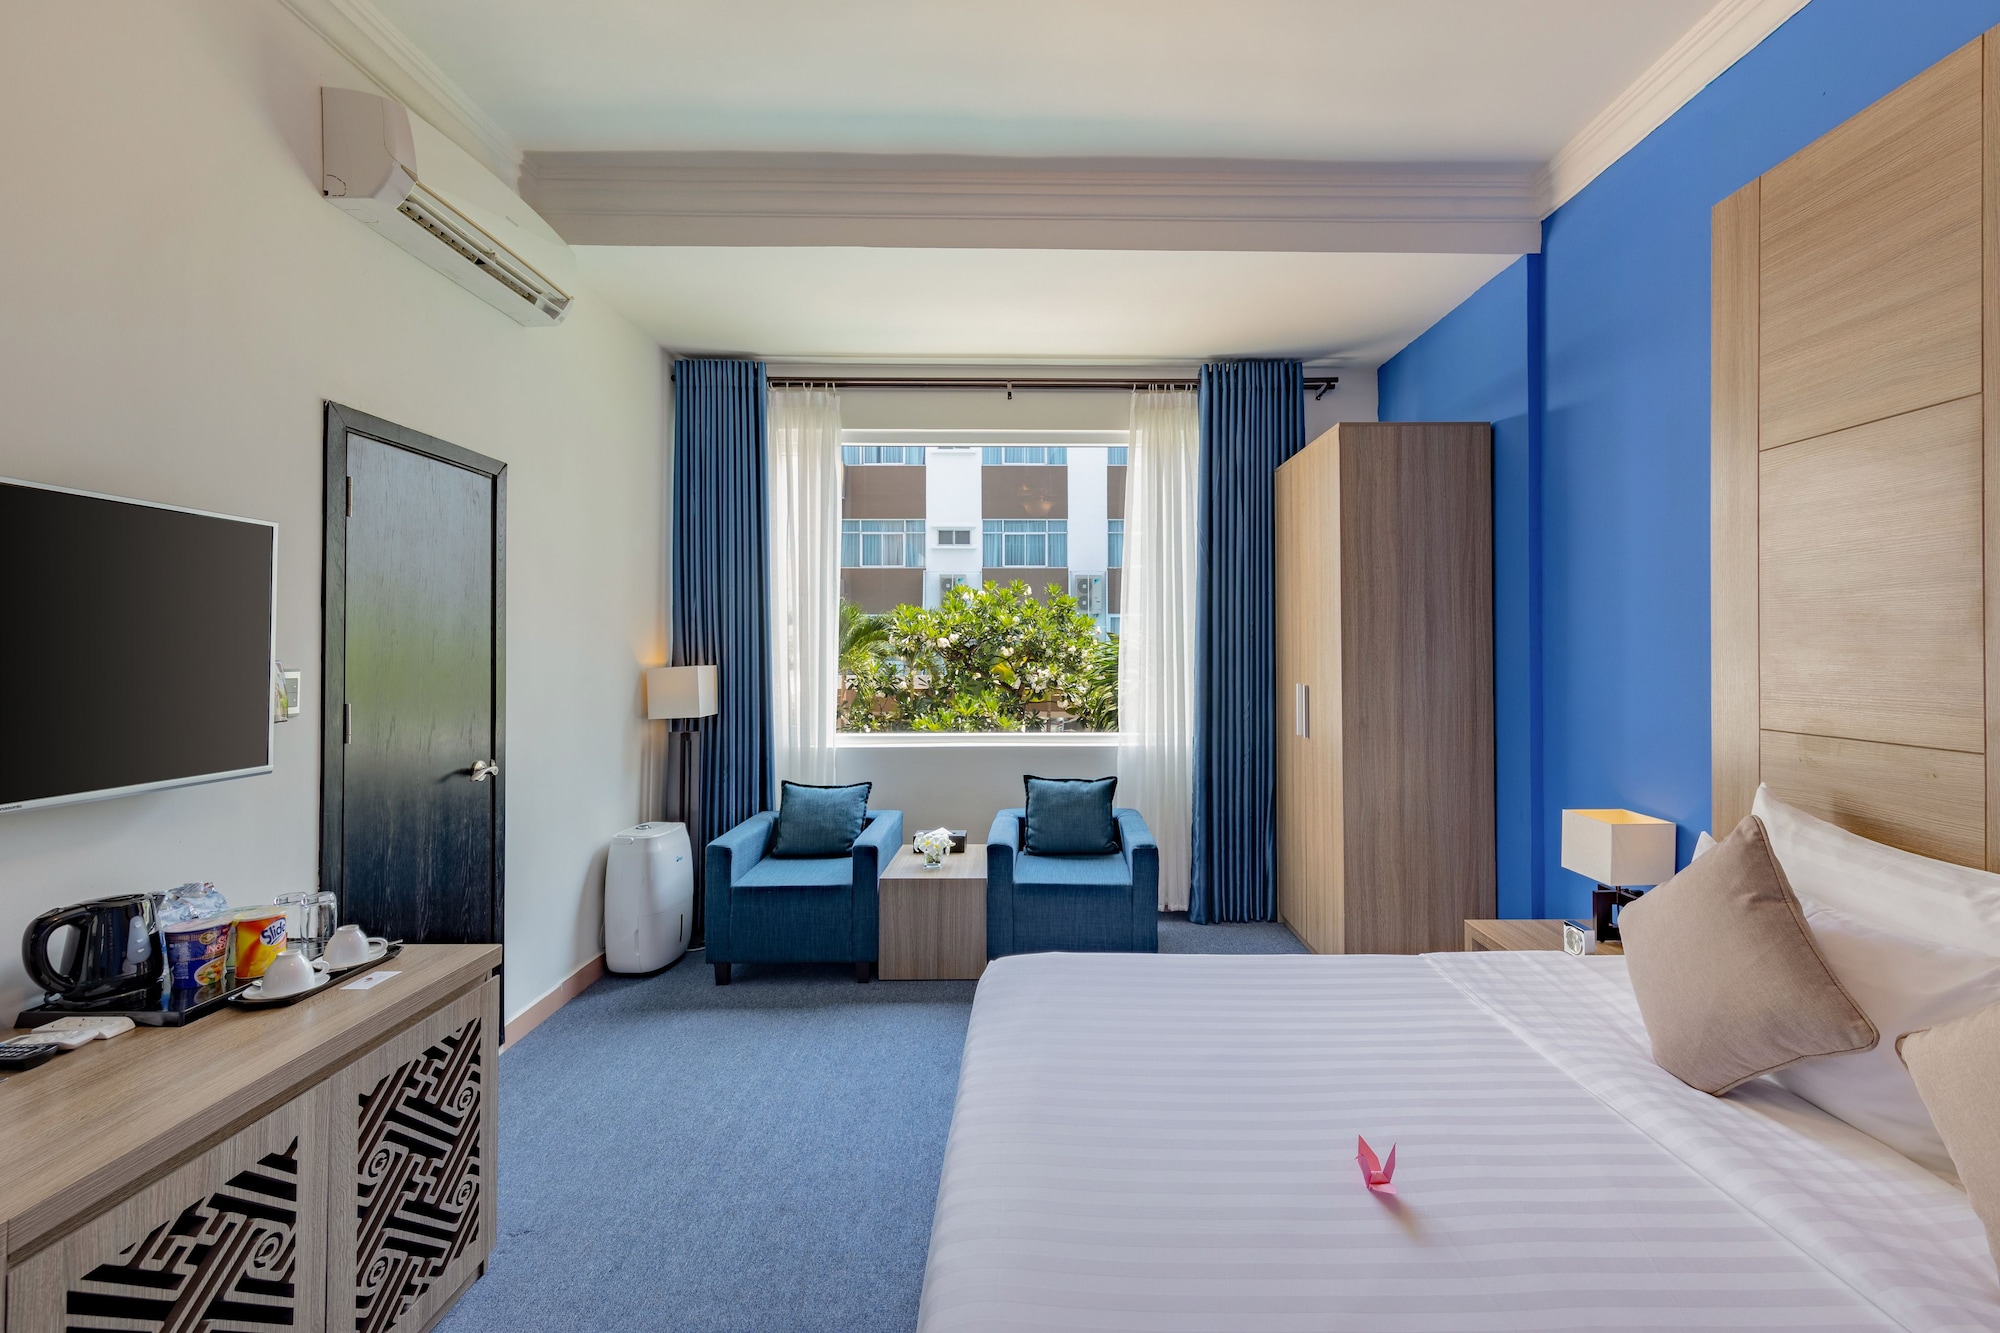 grandvrio city da nang - Top 10 khách sạn đẹp nhất ở Đà Nẵng được nhiều du khách lựa chọn